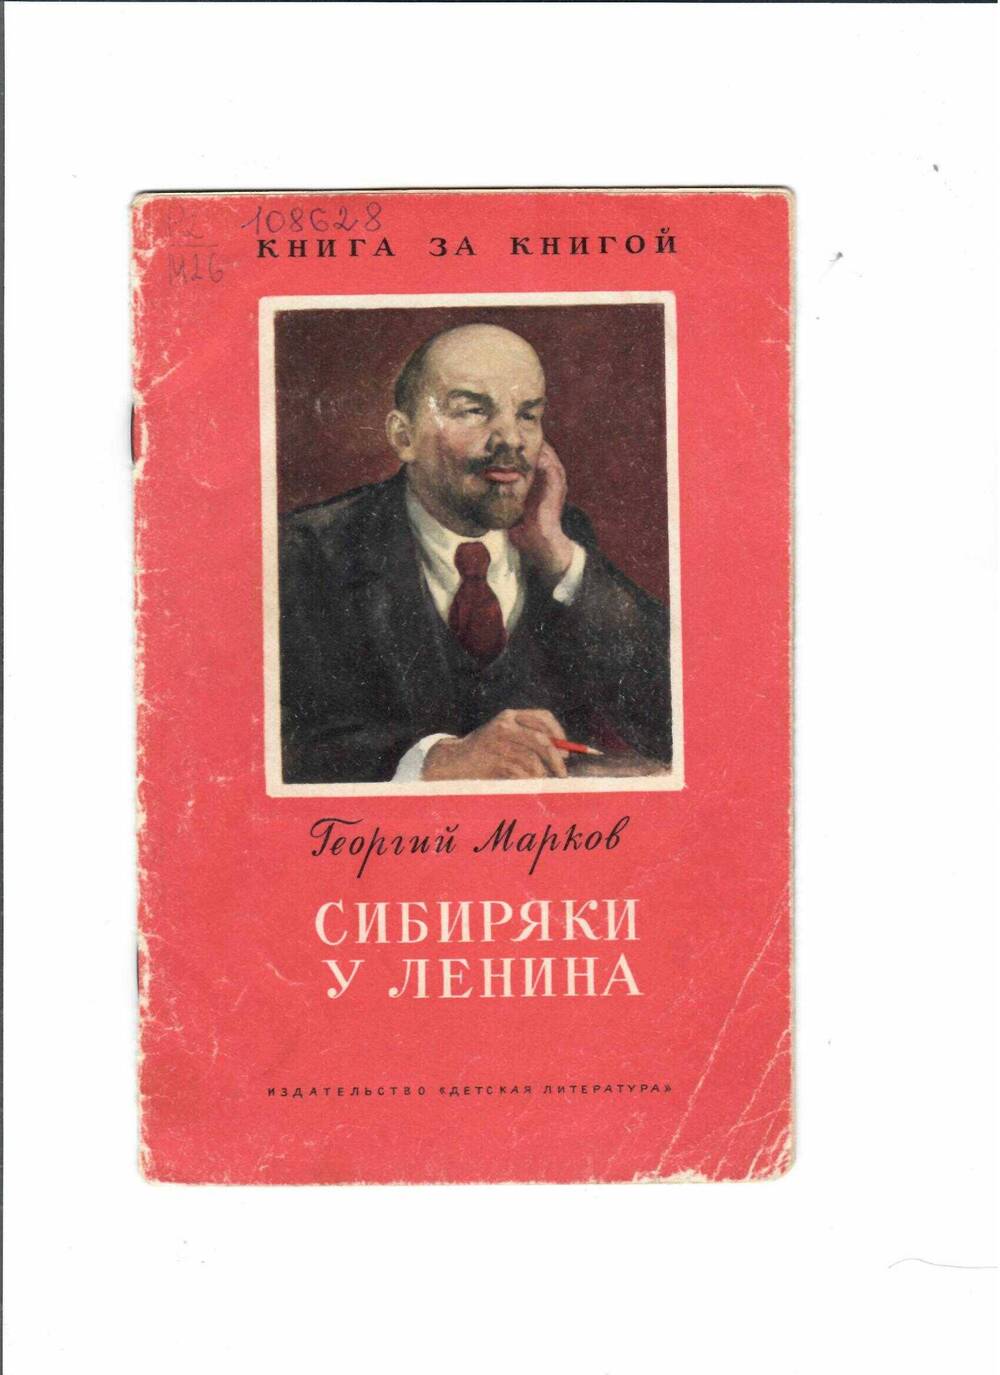 Книга Г. Марков «Сибиряки у Ленина», М., Детская литература, 1978 г.